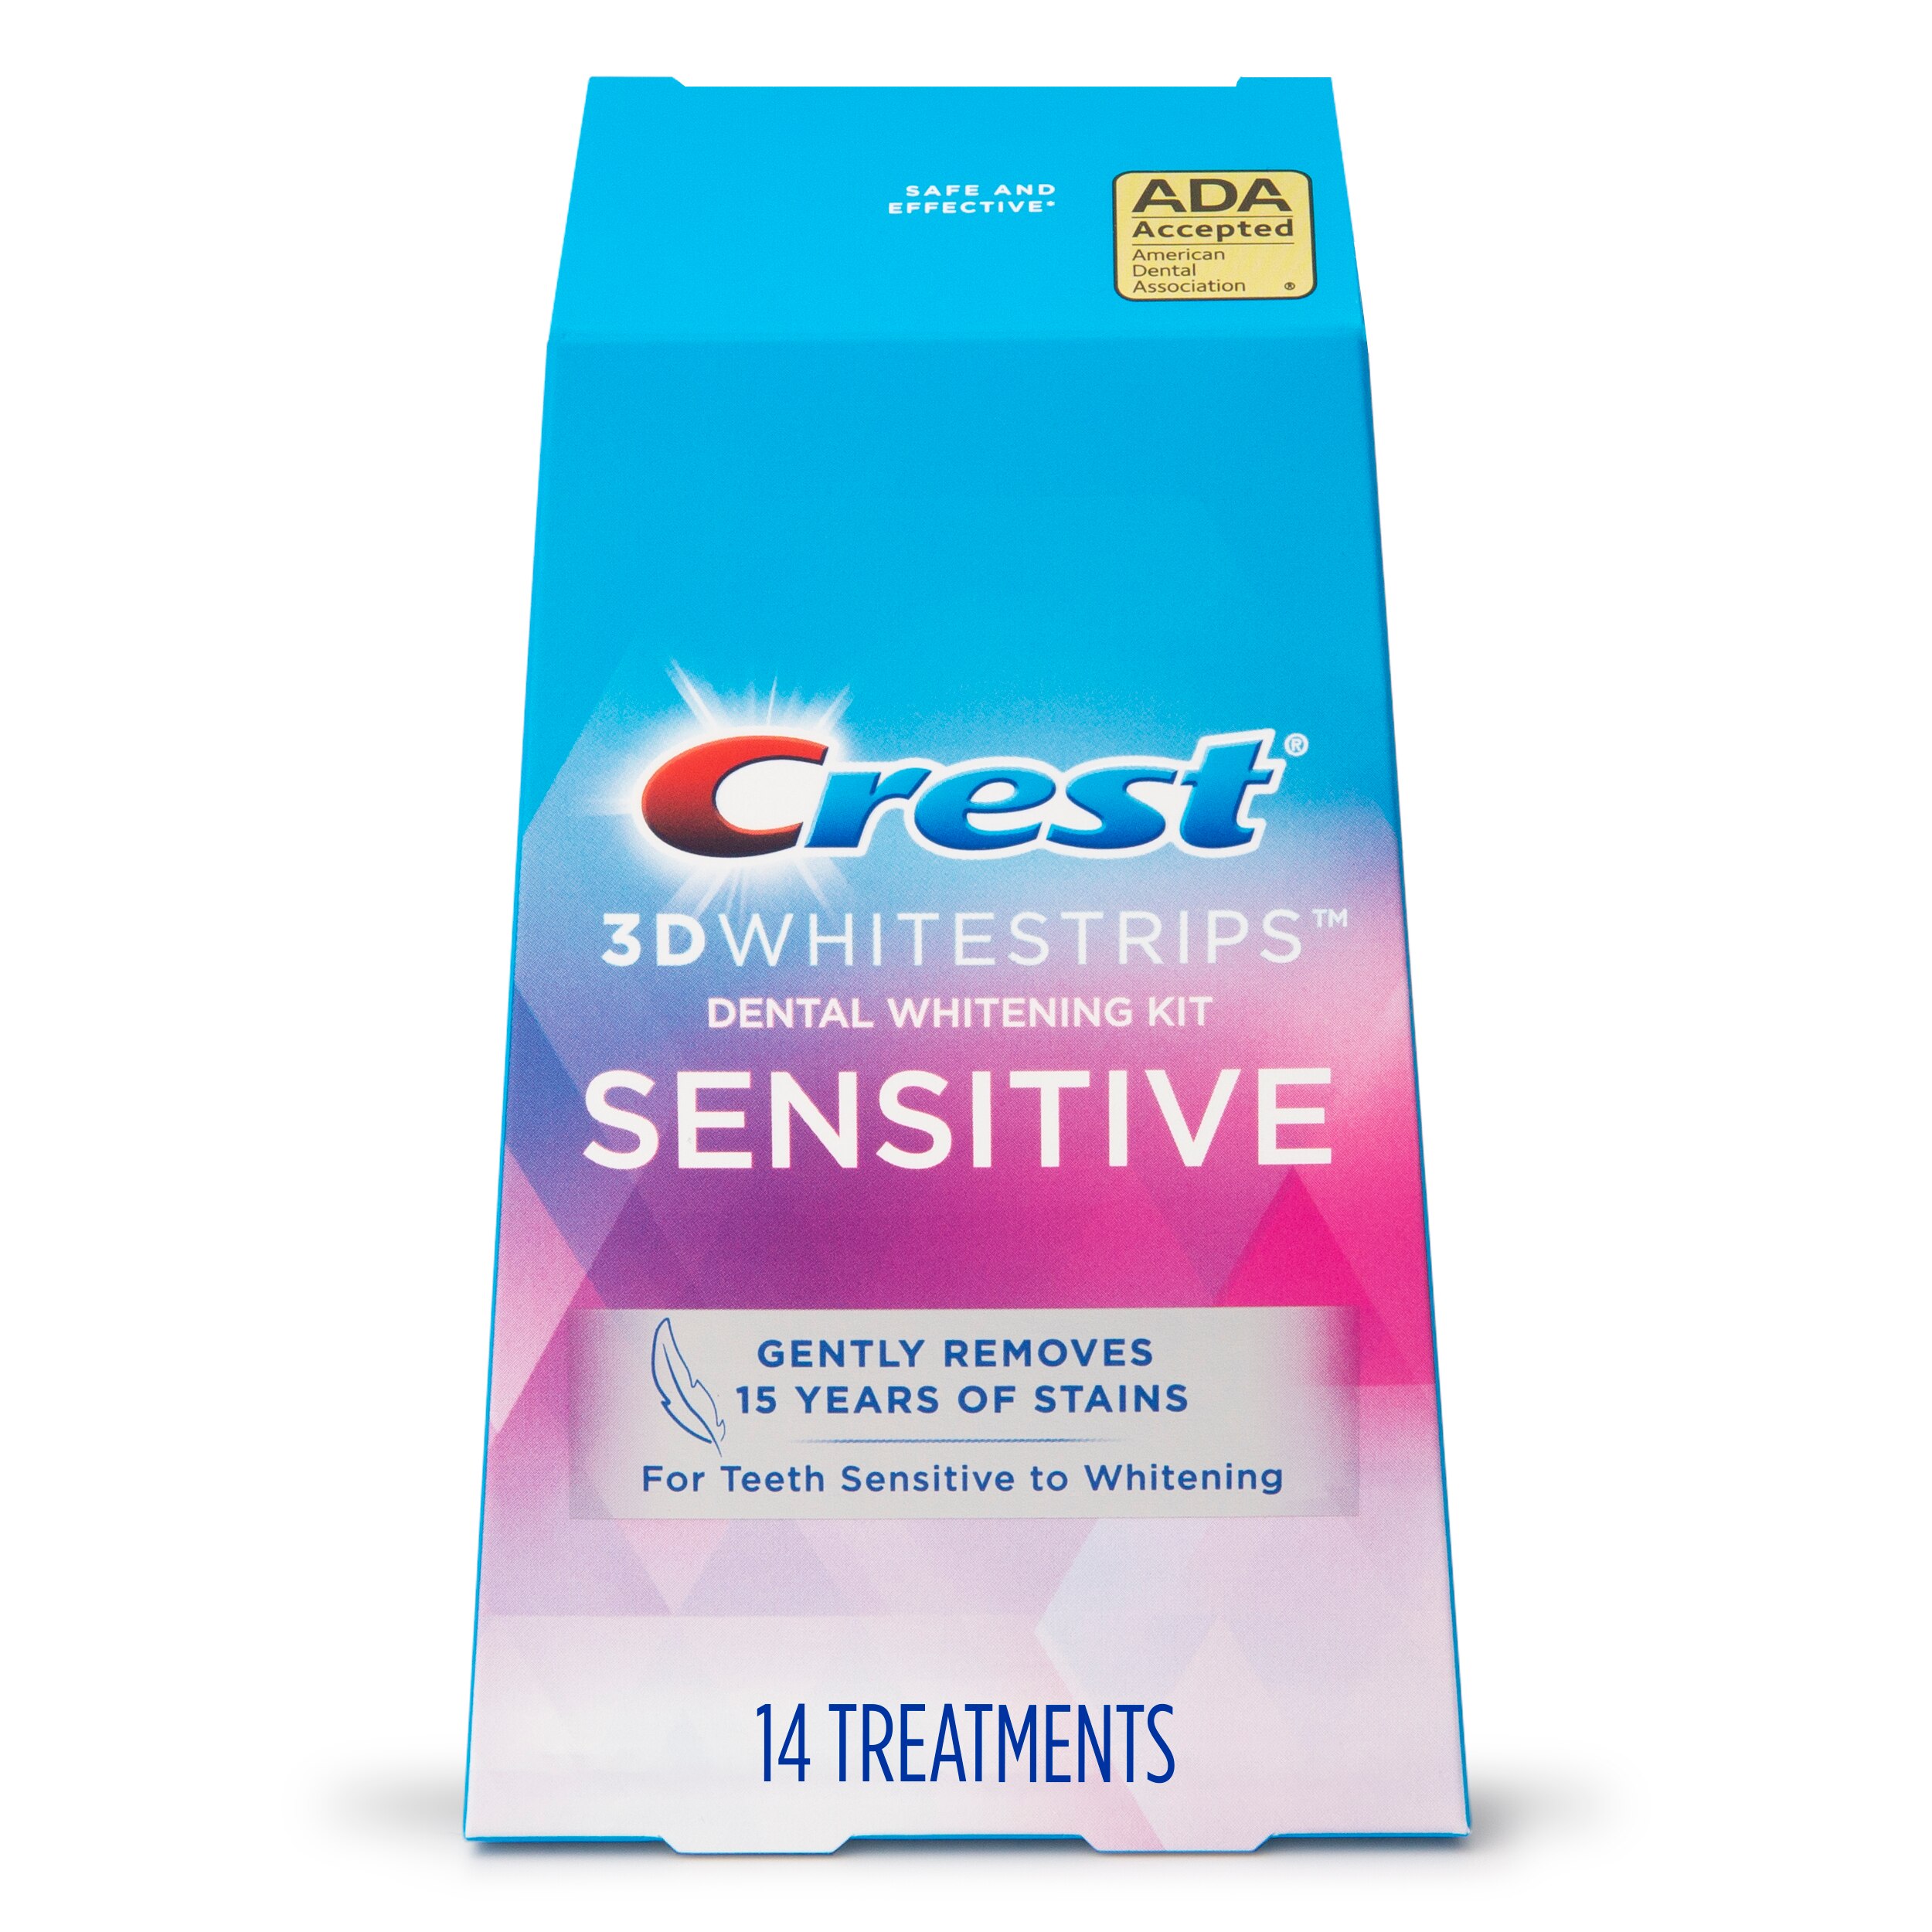 Crest 3D Whitestrips Dental Whitening Kit, Sensitive, 14 Treatments